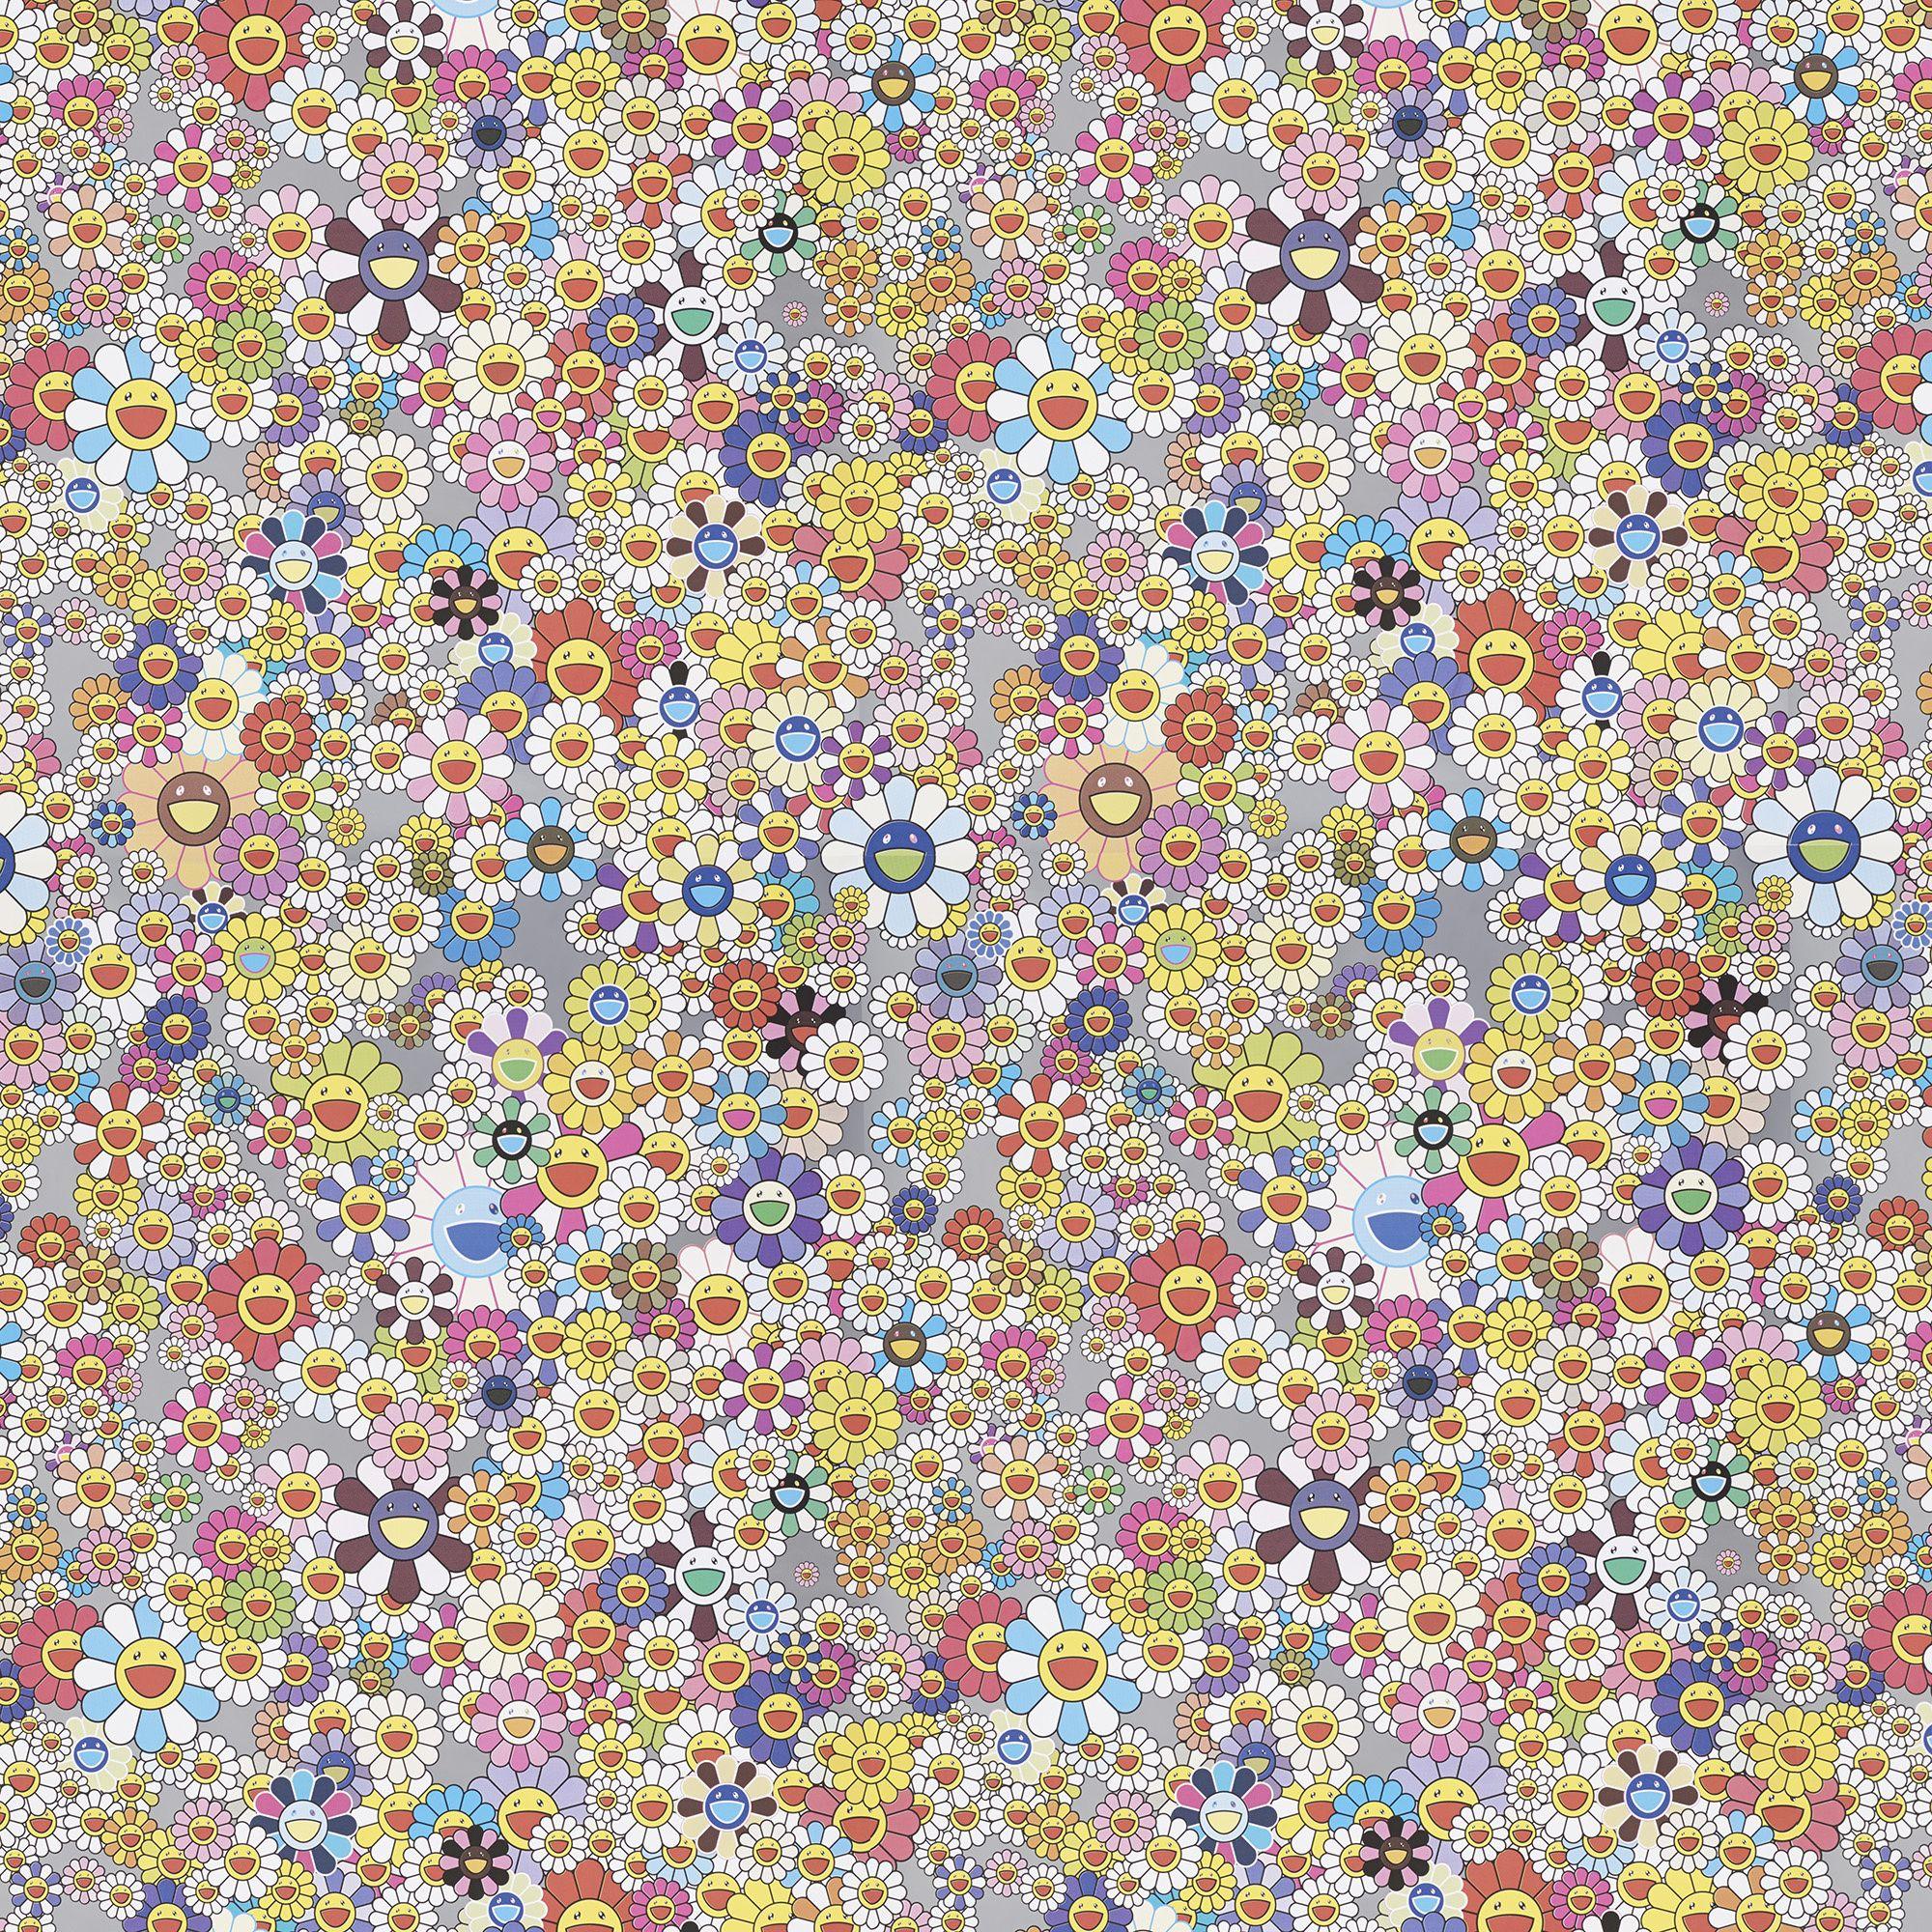 Louis Vuitton Wallpapers 1440x900  Superflat, Takashi murakami, Murakami